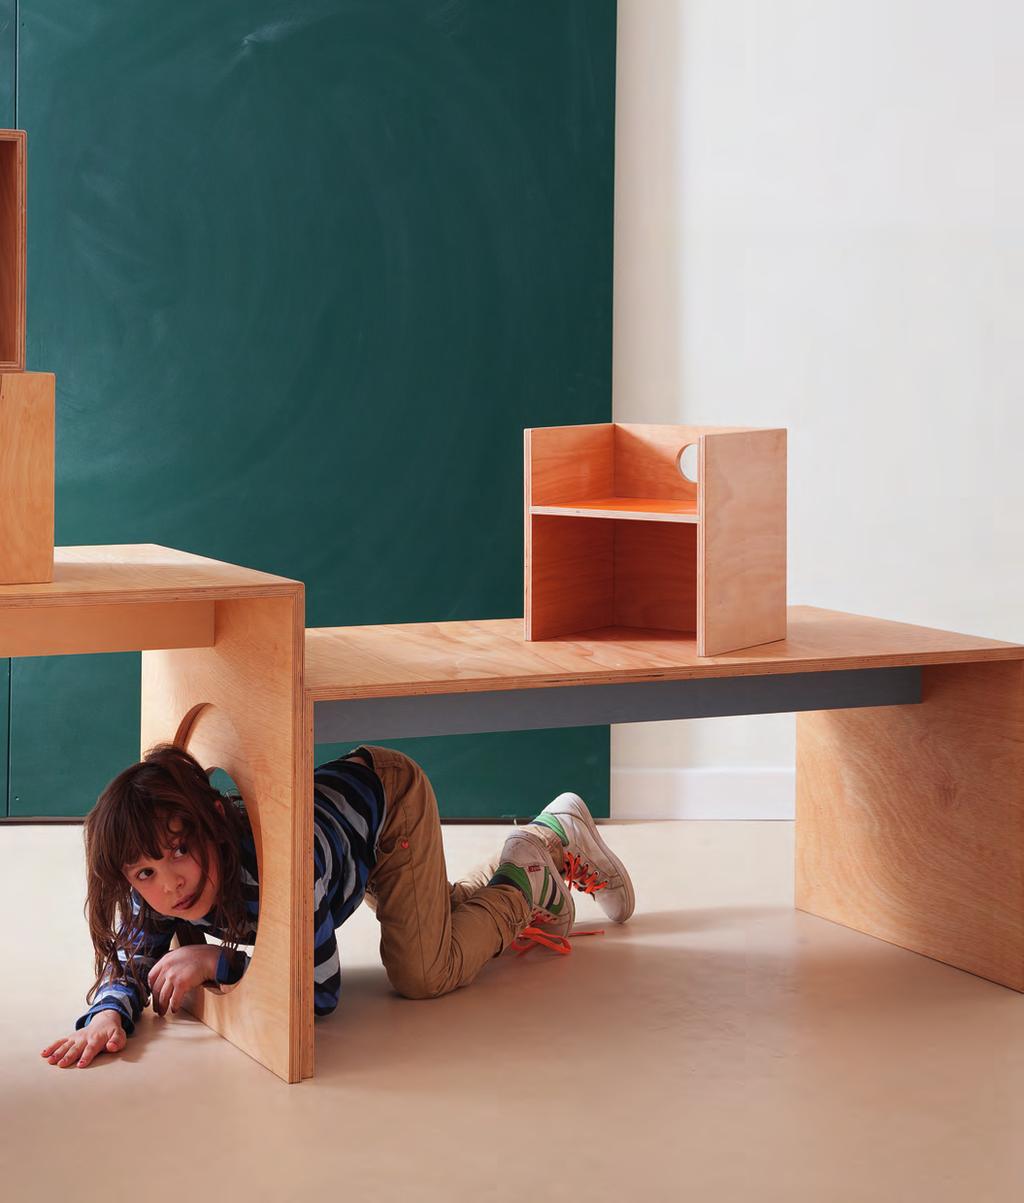 Möbel, an denen Kinder wachsen Mit Herz gestaltet